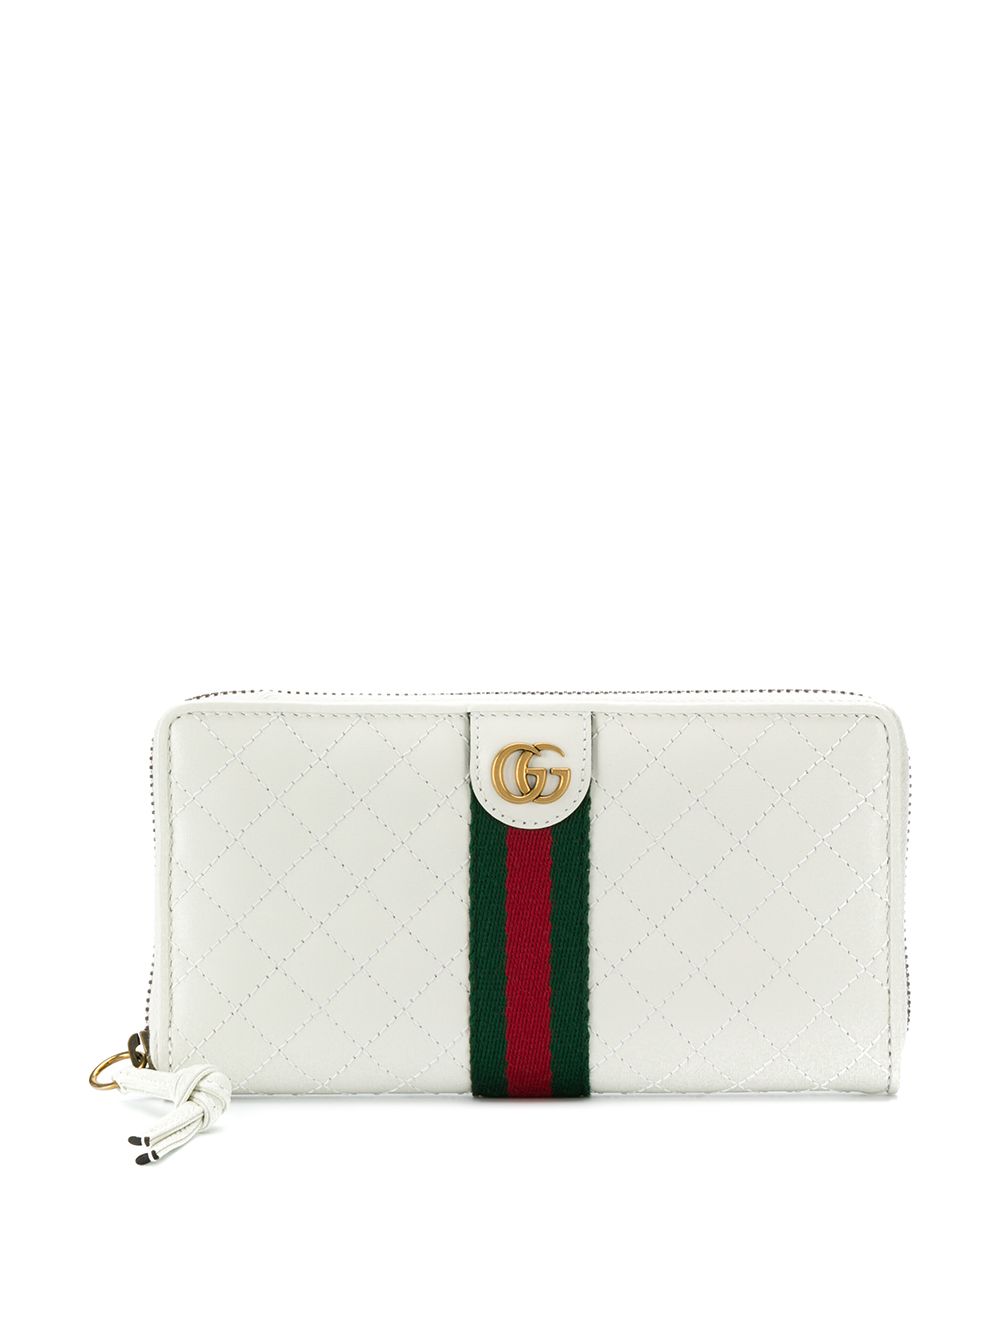 фото Gucci стеганый кошелек с логотипом GG